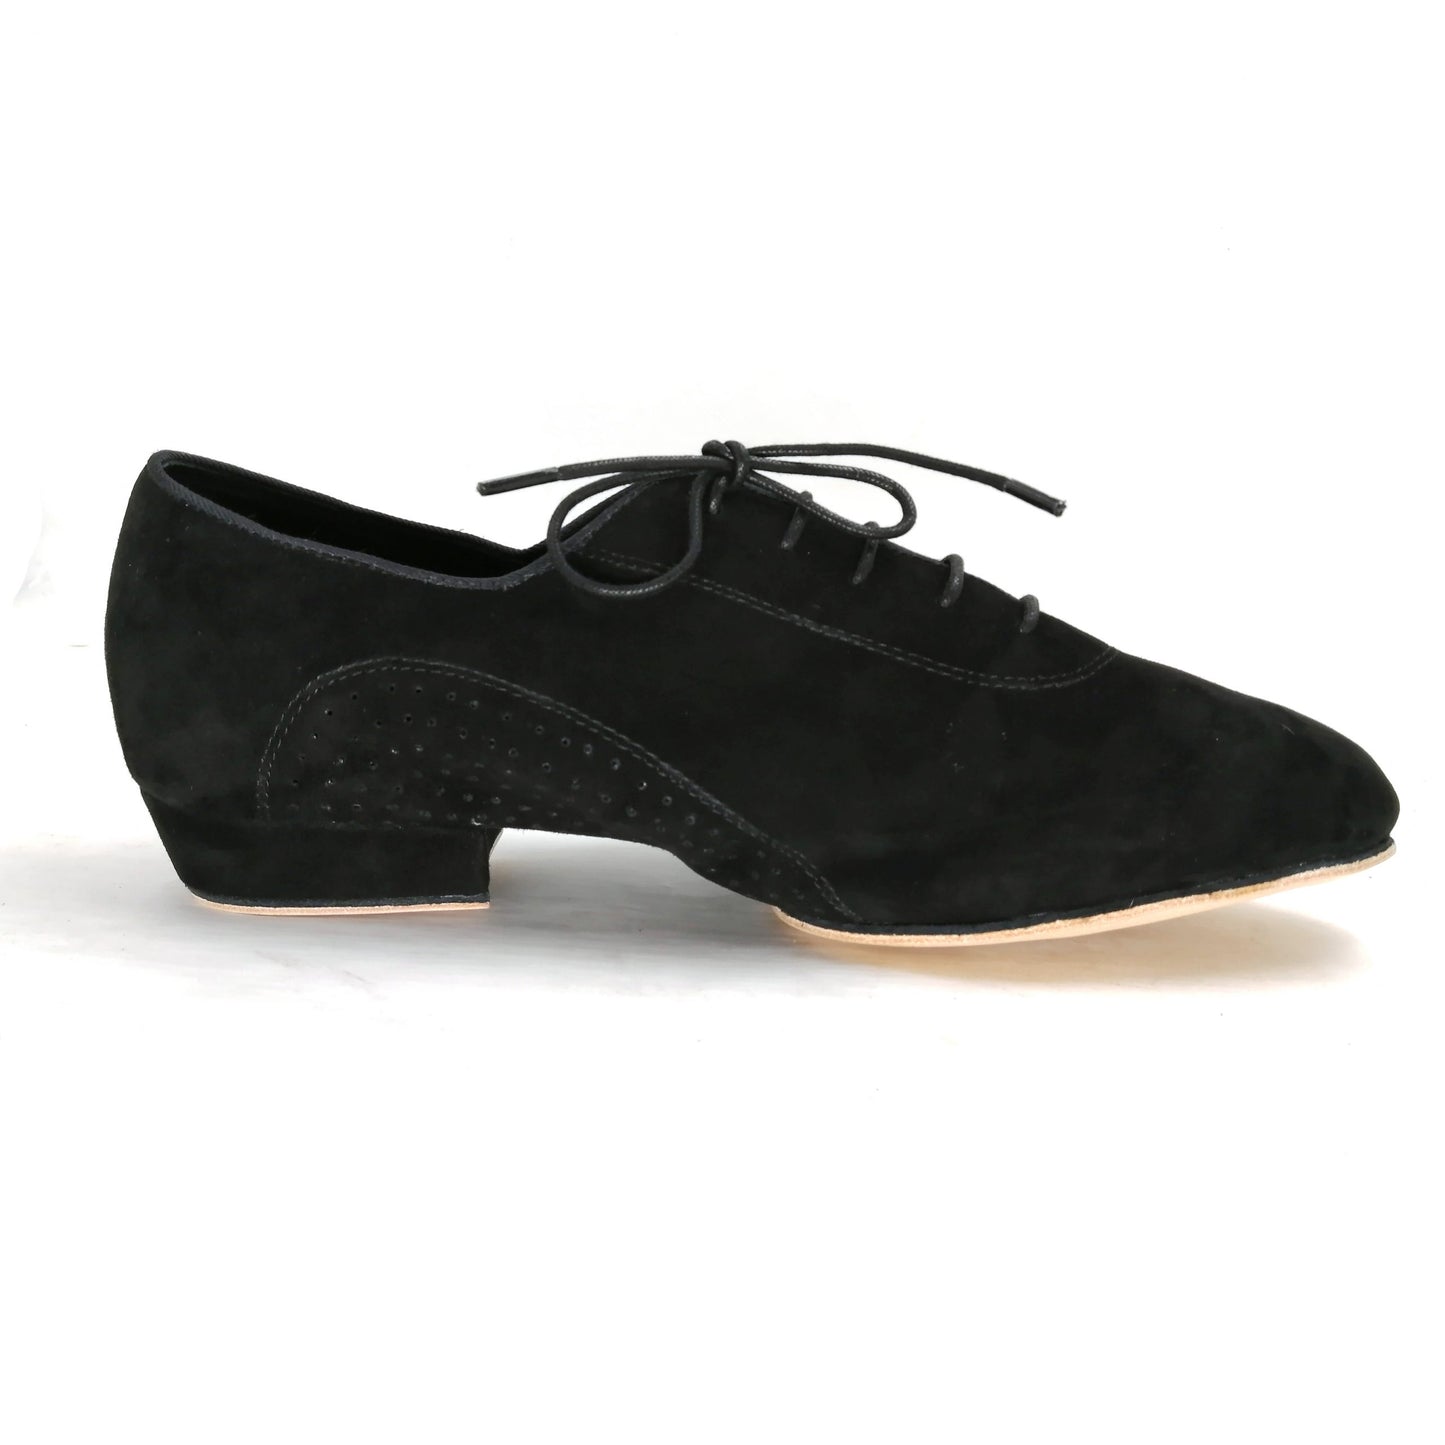 Pro Dancer Men's Tango Dance Shoes Leather Sole 1 inch Heel Lace-up Split Sole Black (PD-1003A)